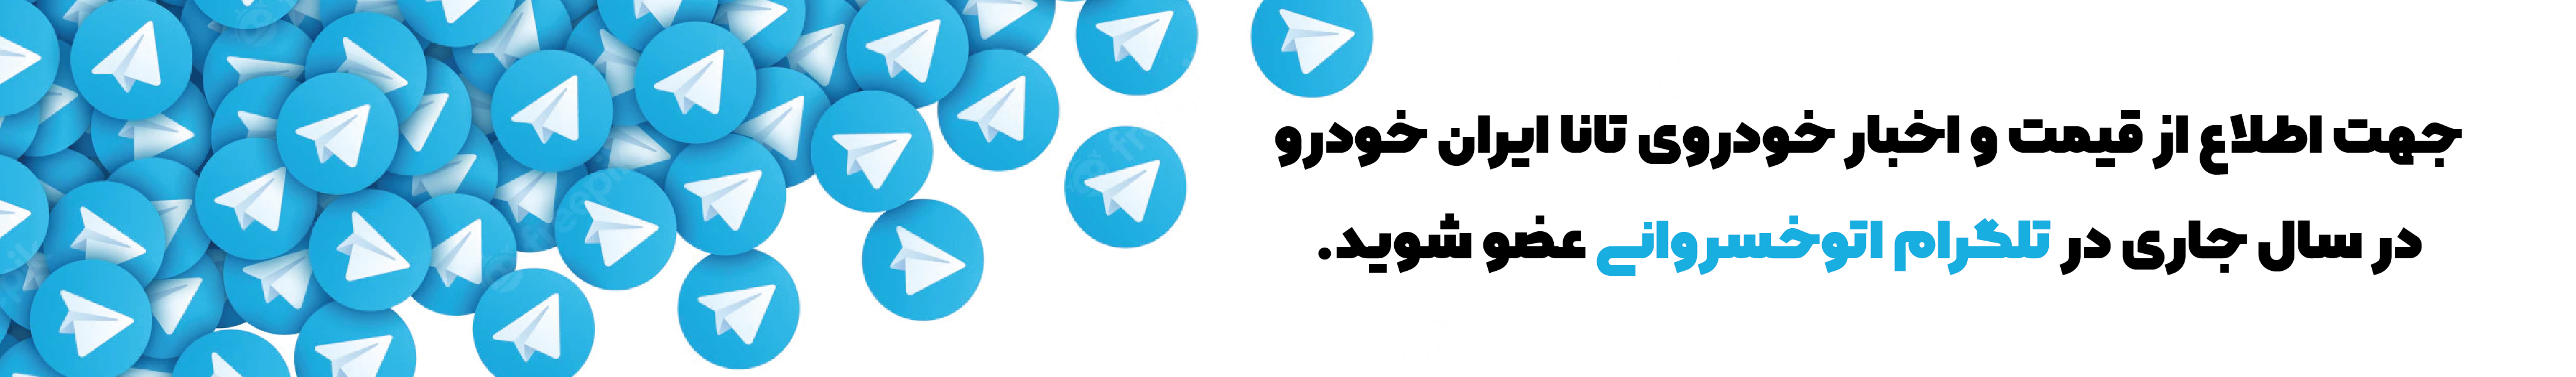 تلگرام اتوخسروانی